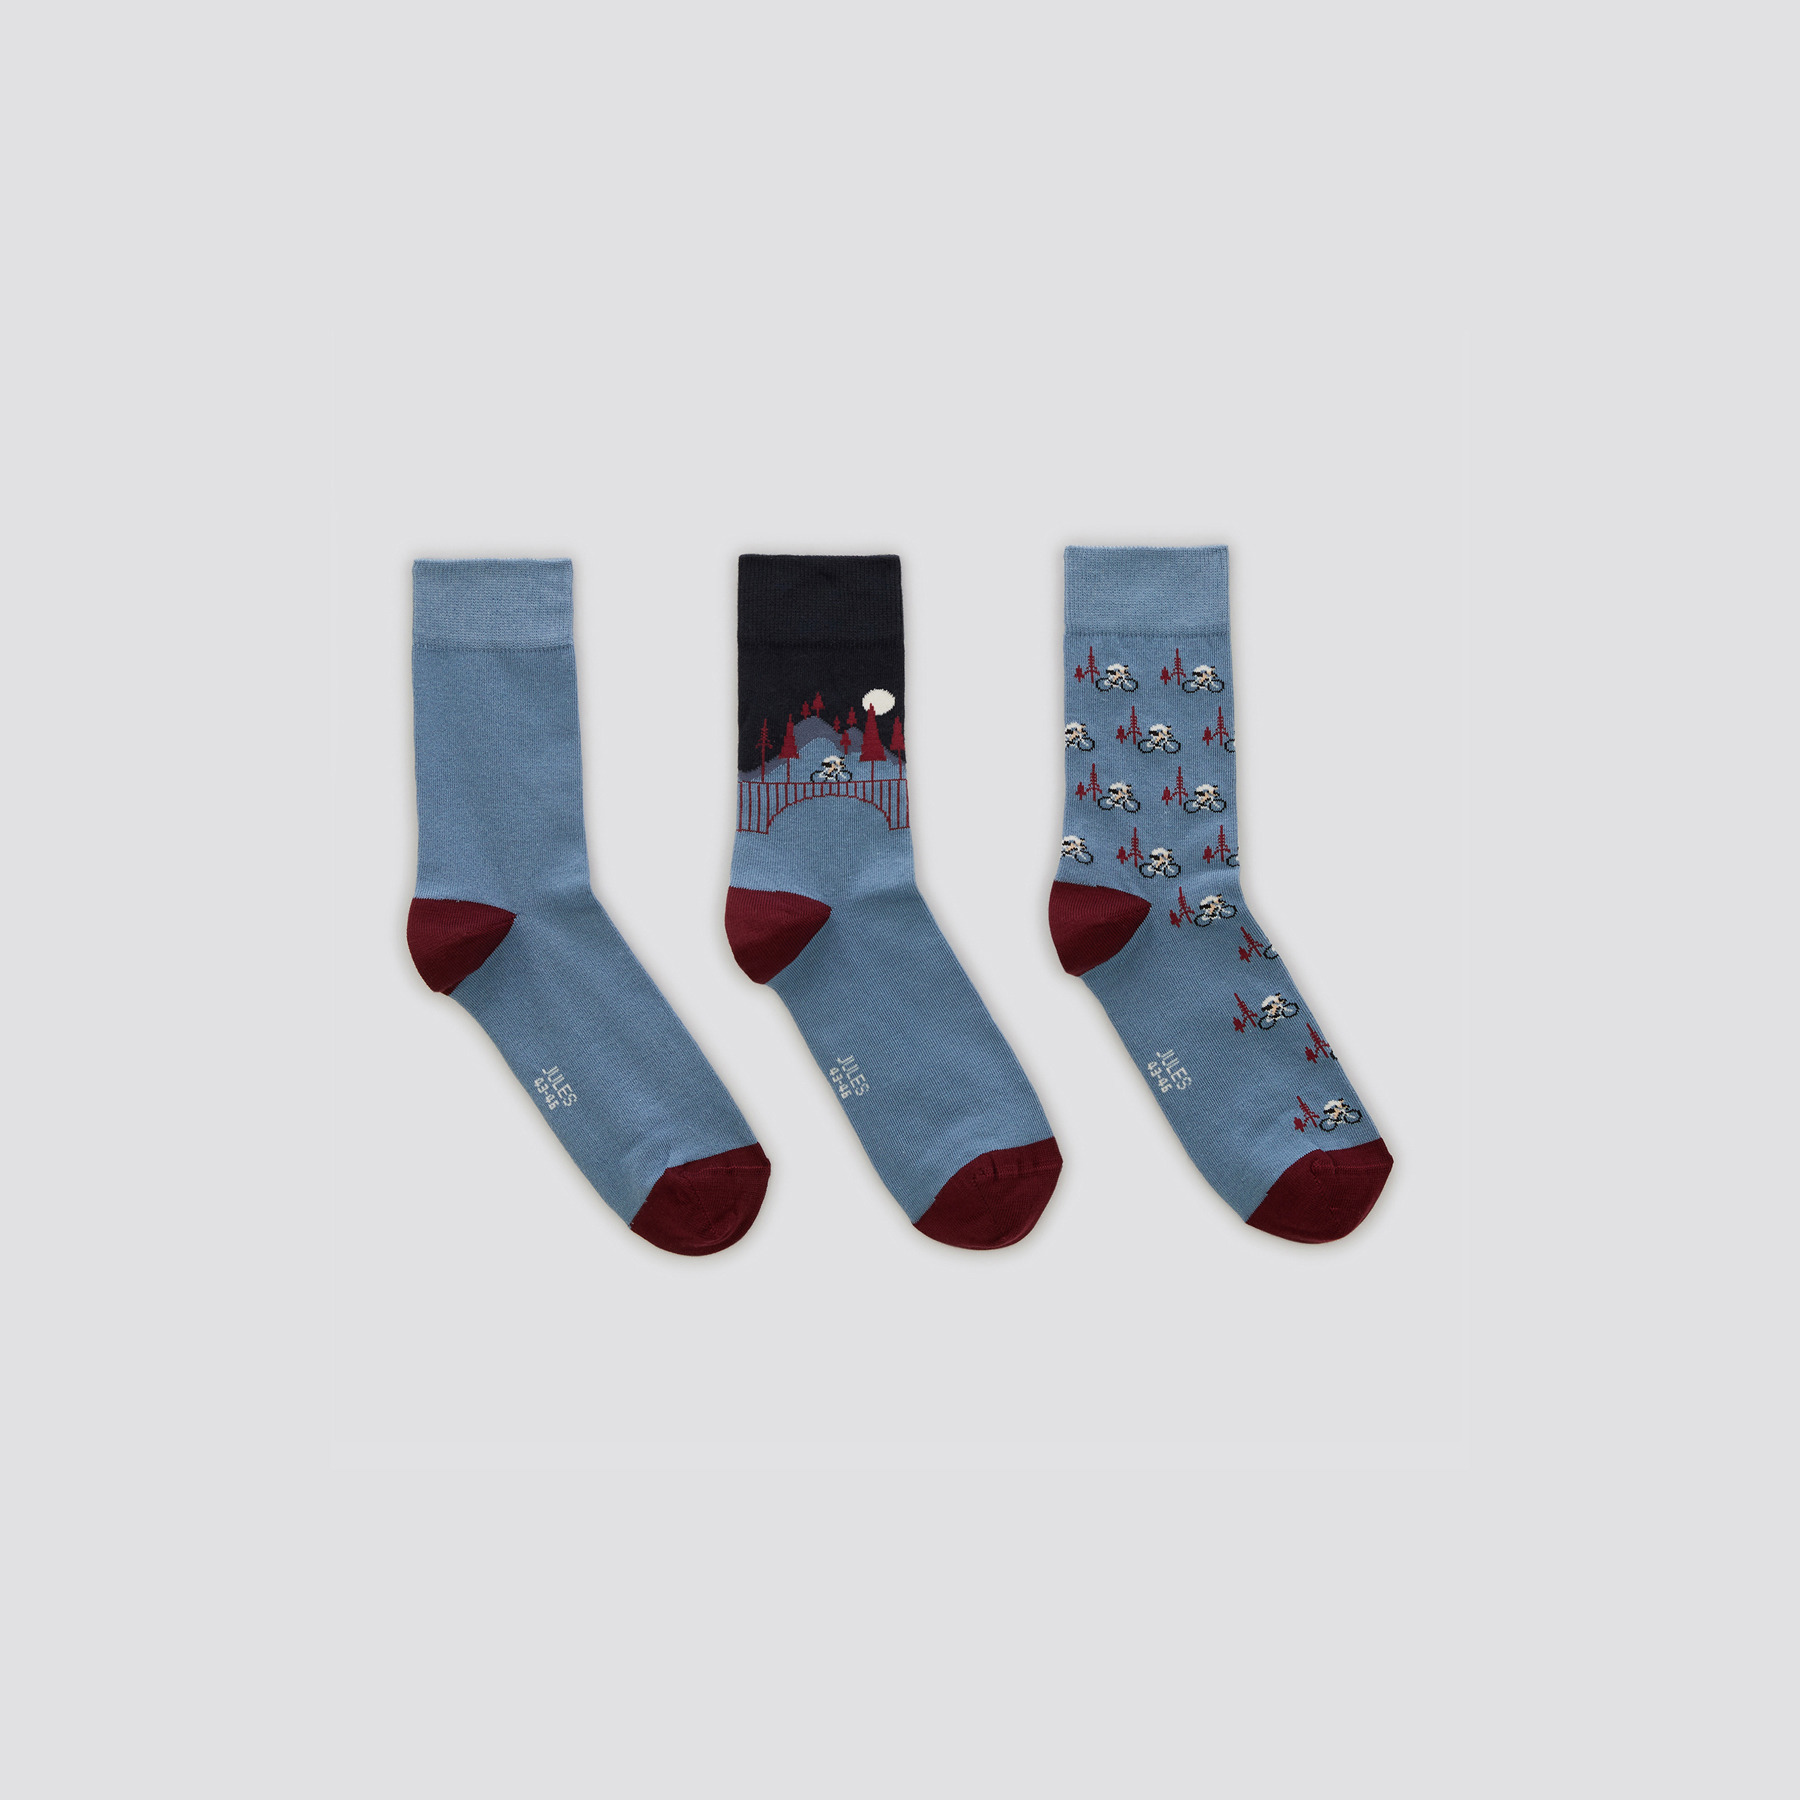 Lot de 3 paires de chaussettes fantaisie coton iss Multicolore 39/42 73% Coton, 25% Polyamide, 2% Elasthanne Homme Jules